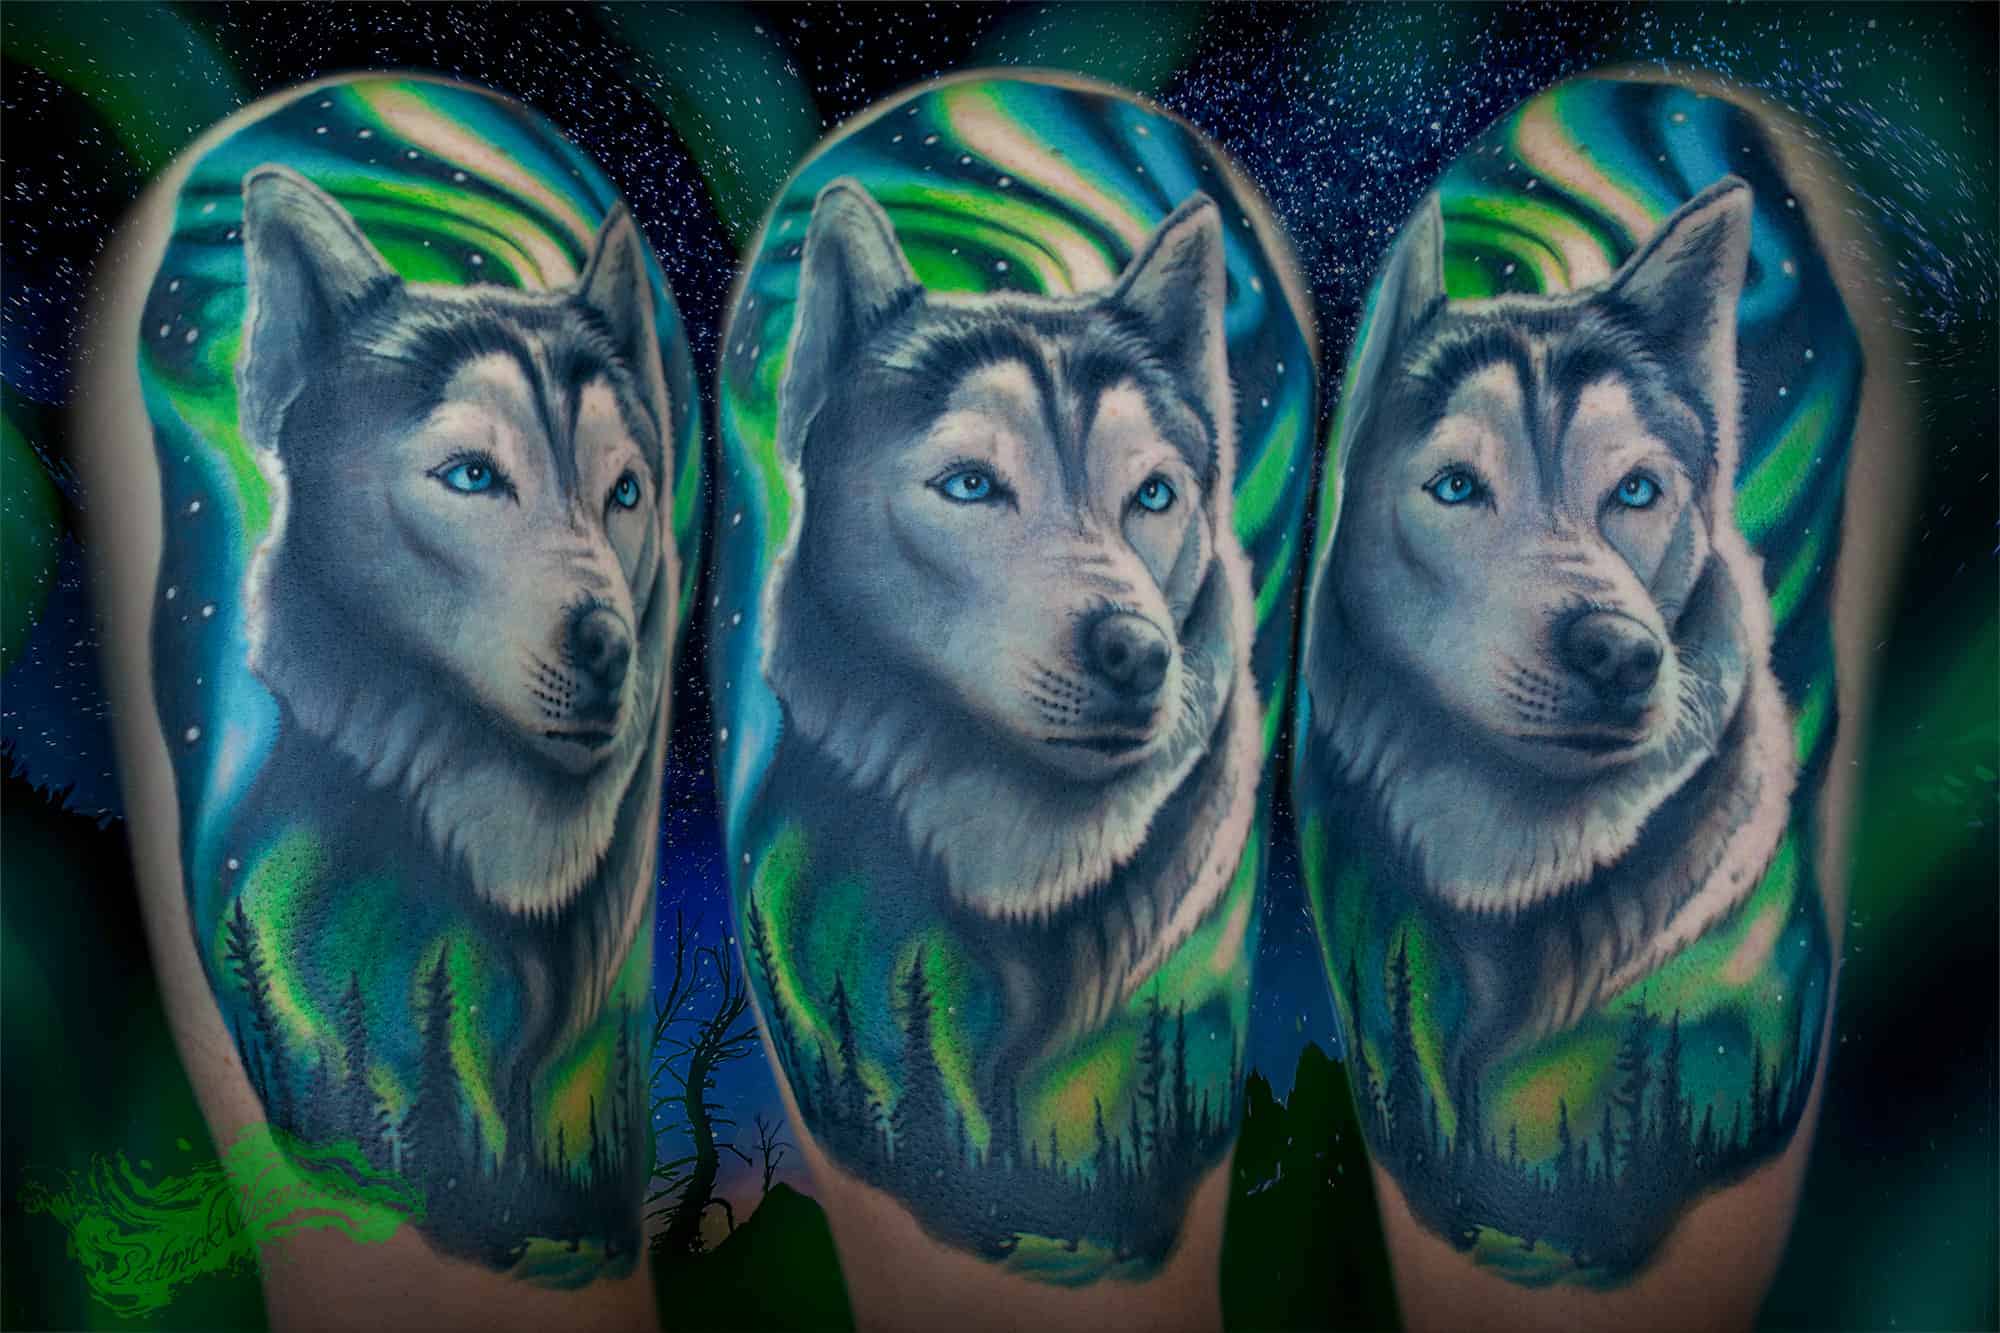 Kinglines Tattoo Studio - Geometric Wolf/Husky For Appointments Call  9620713446 www.kinglinestattoo.com Fb-  https://www.facebook.com/Kinglinestattoo Insta-  https://www.instagram.com/kinglinestattoo/ #geometric #wolf #husky  #doglover #pet #tattoo ...